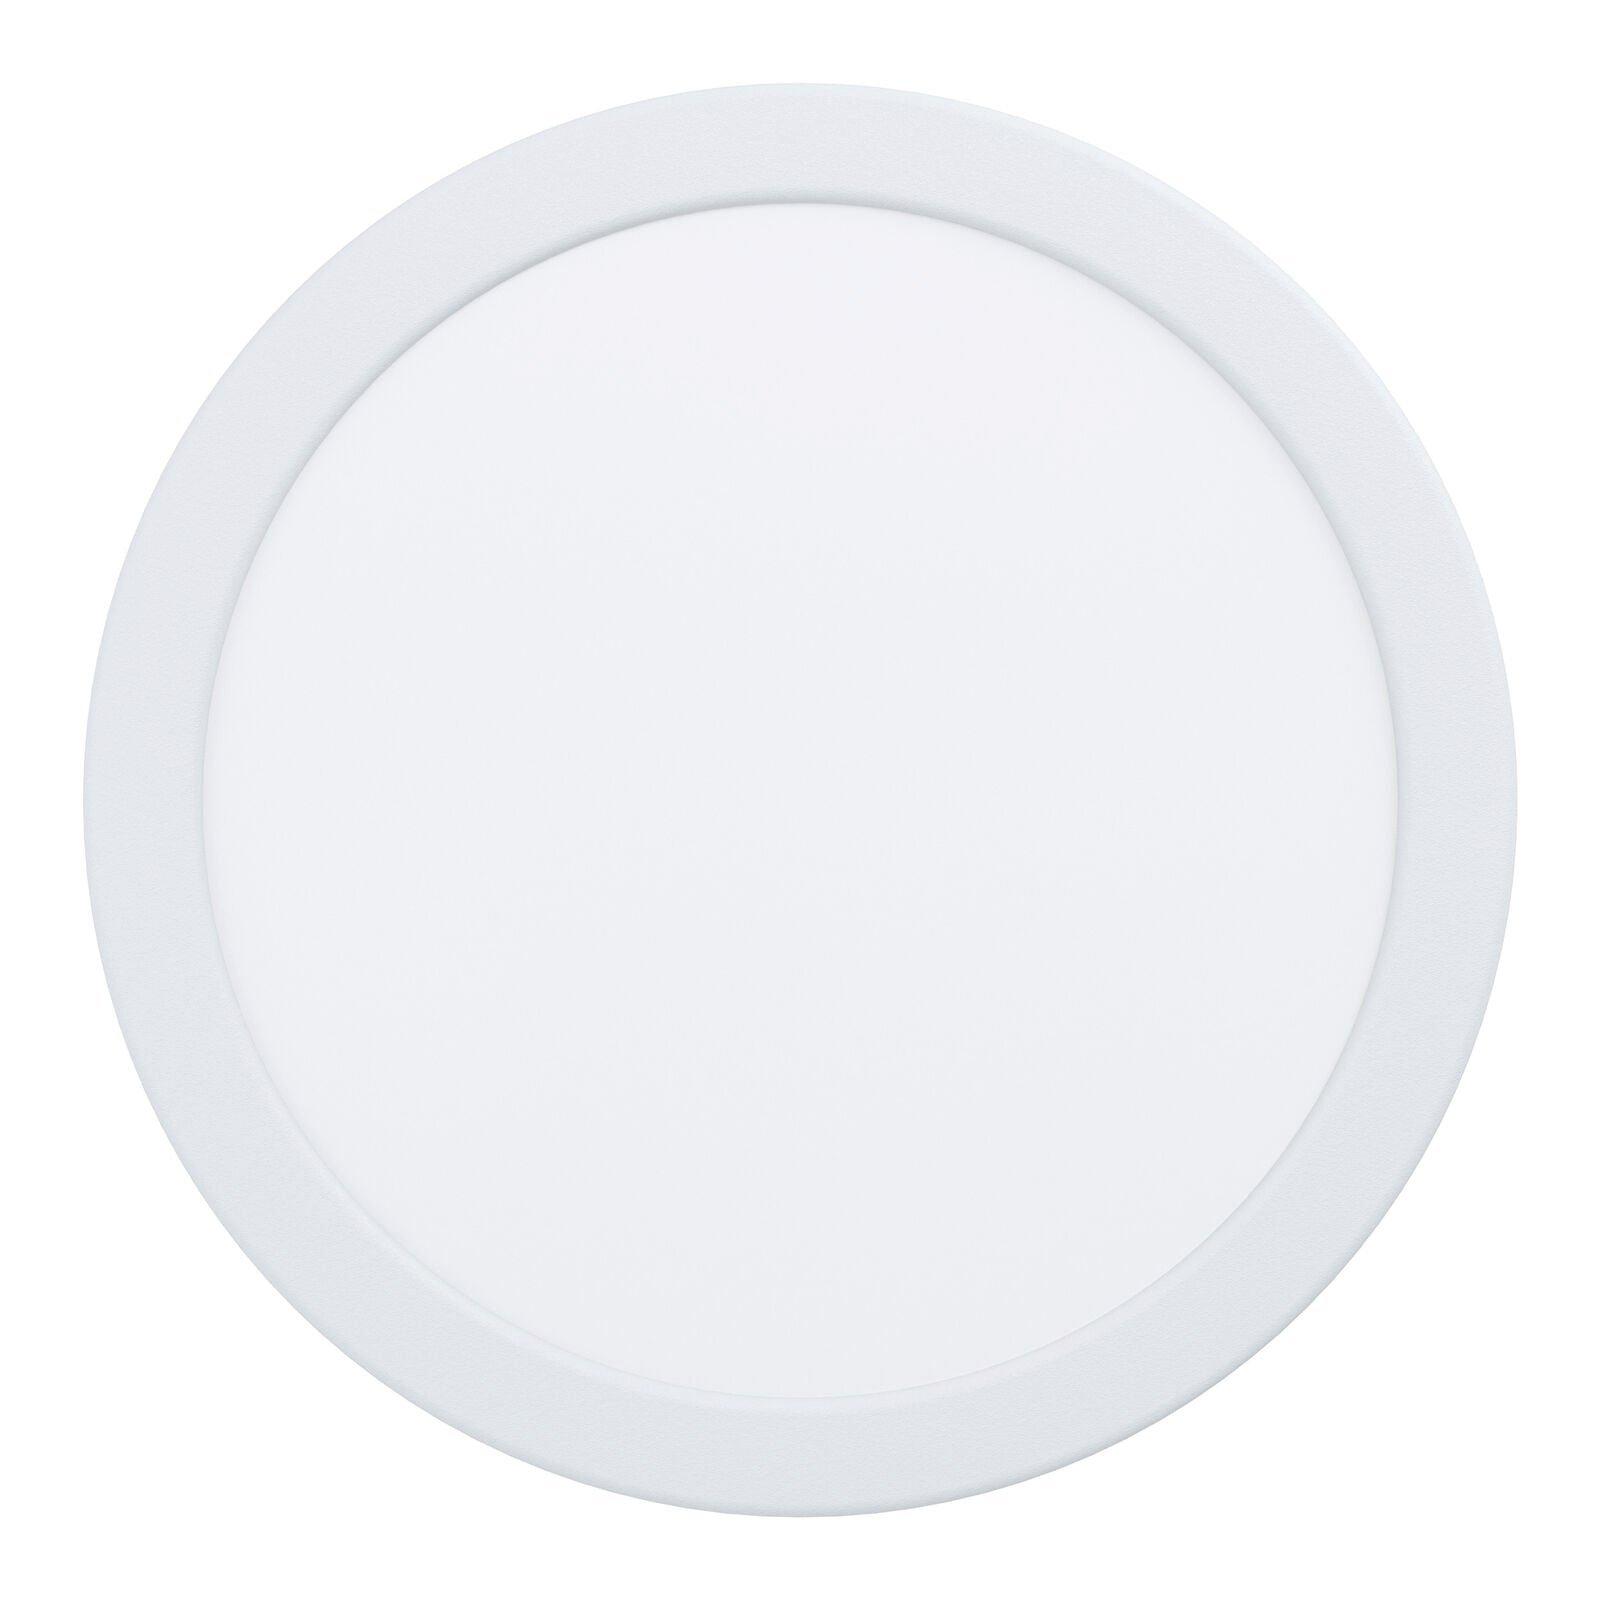 Wall / Ceiling Flush Downlight 216mm White Round Spotlight 16.5W 4000K LED